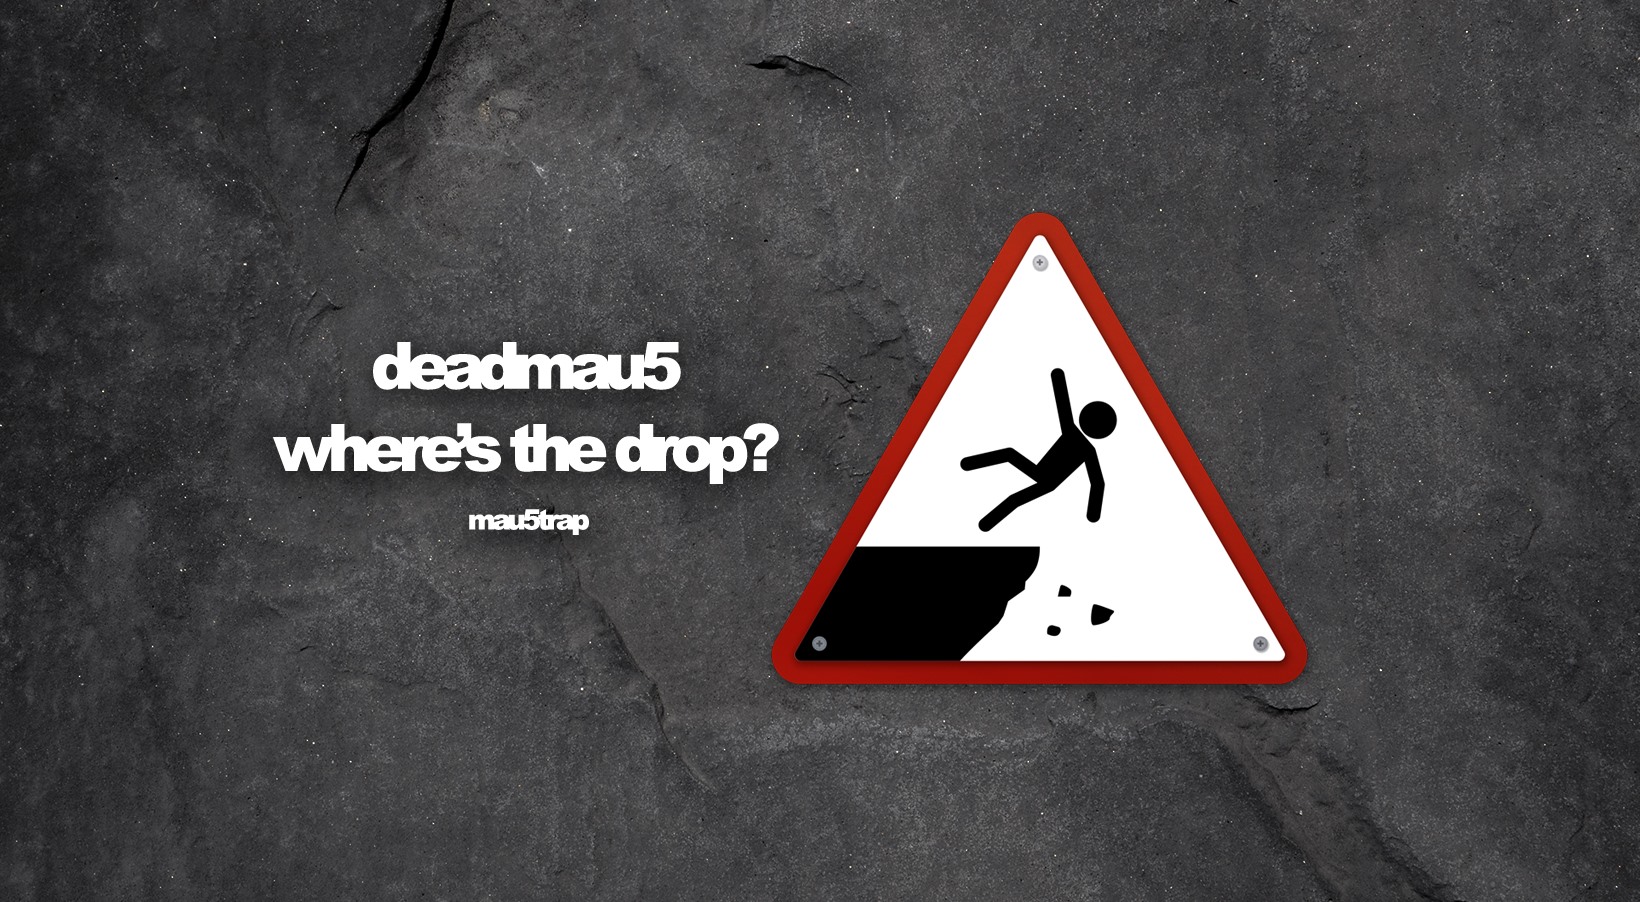 deadmau5 where's the drop